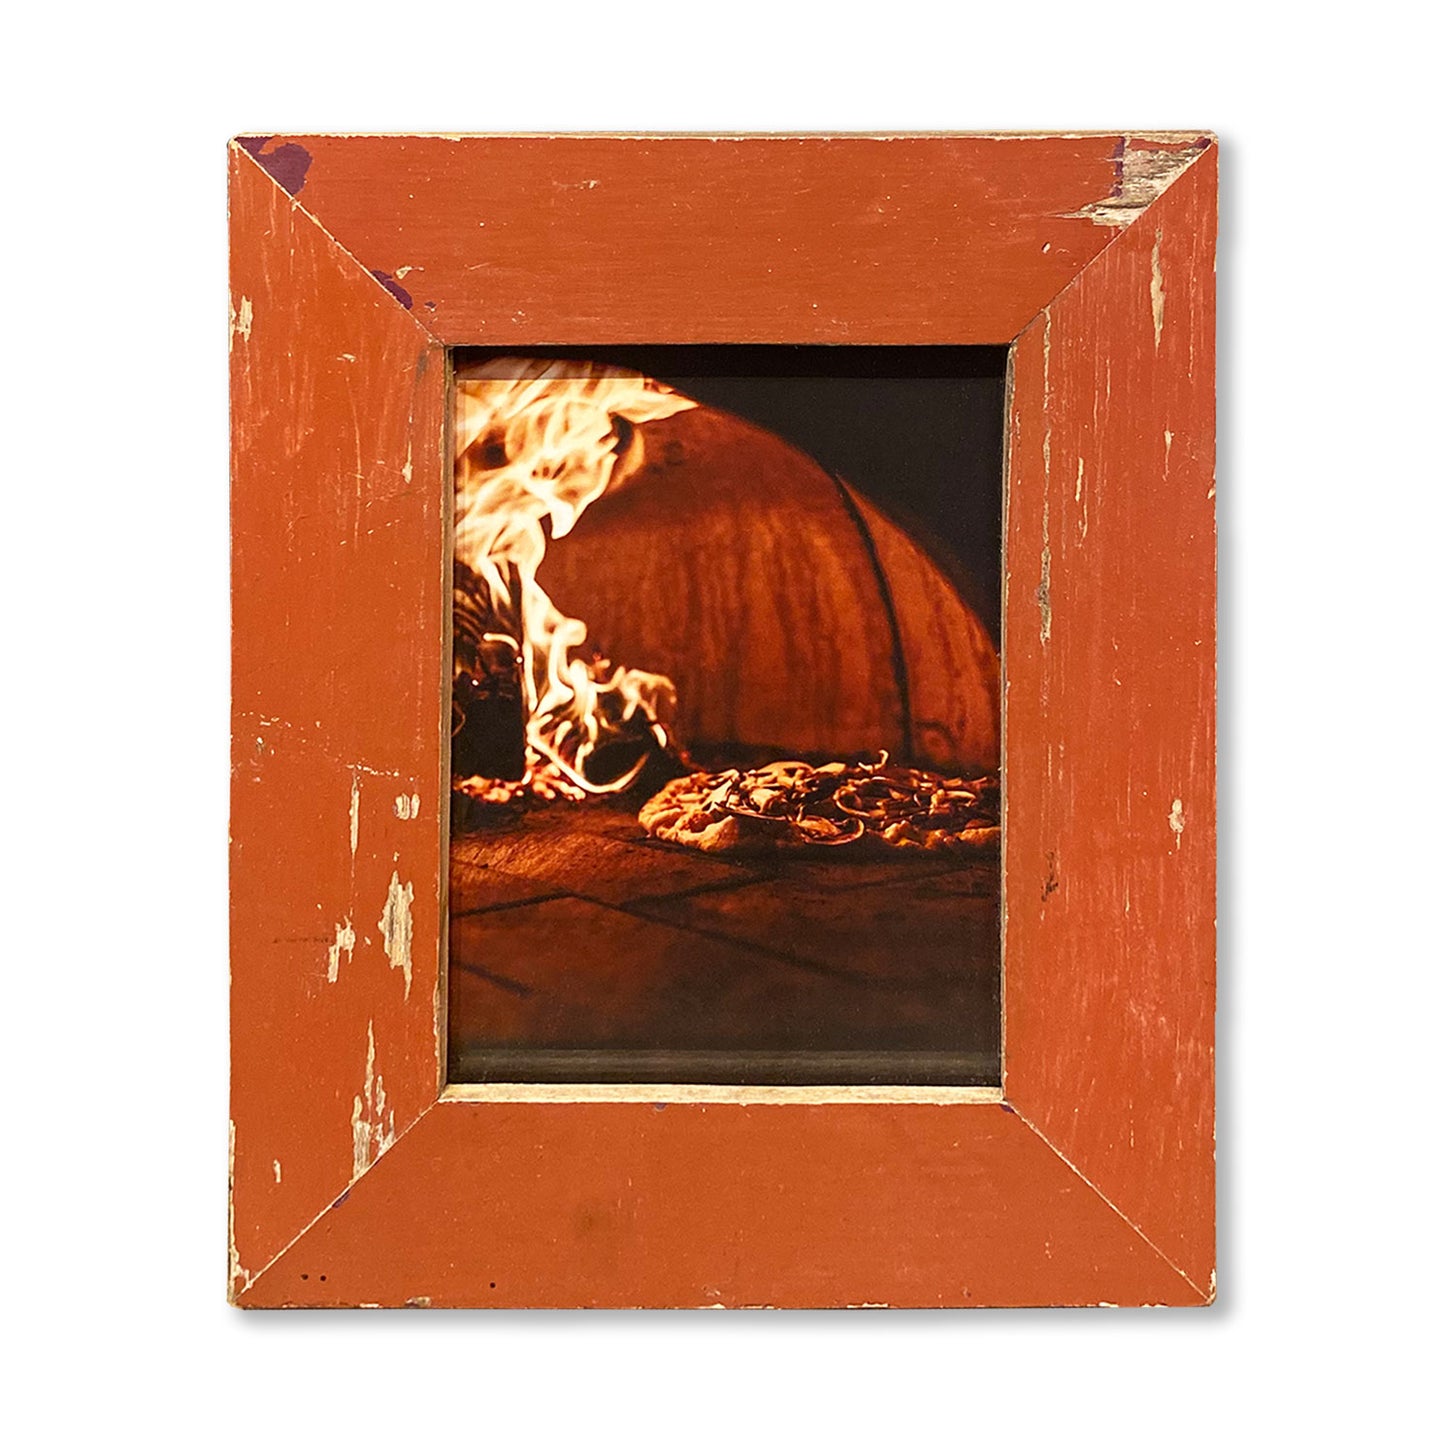 Cornice con immagine pizza nel forno a legna. Idea regalo proprietari pizzeria